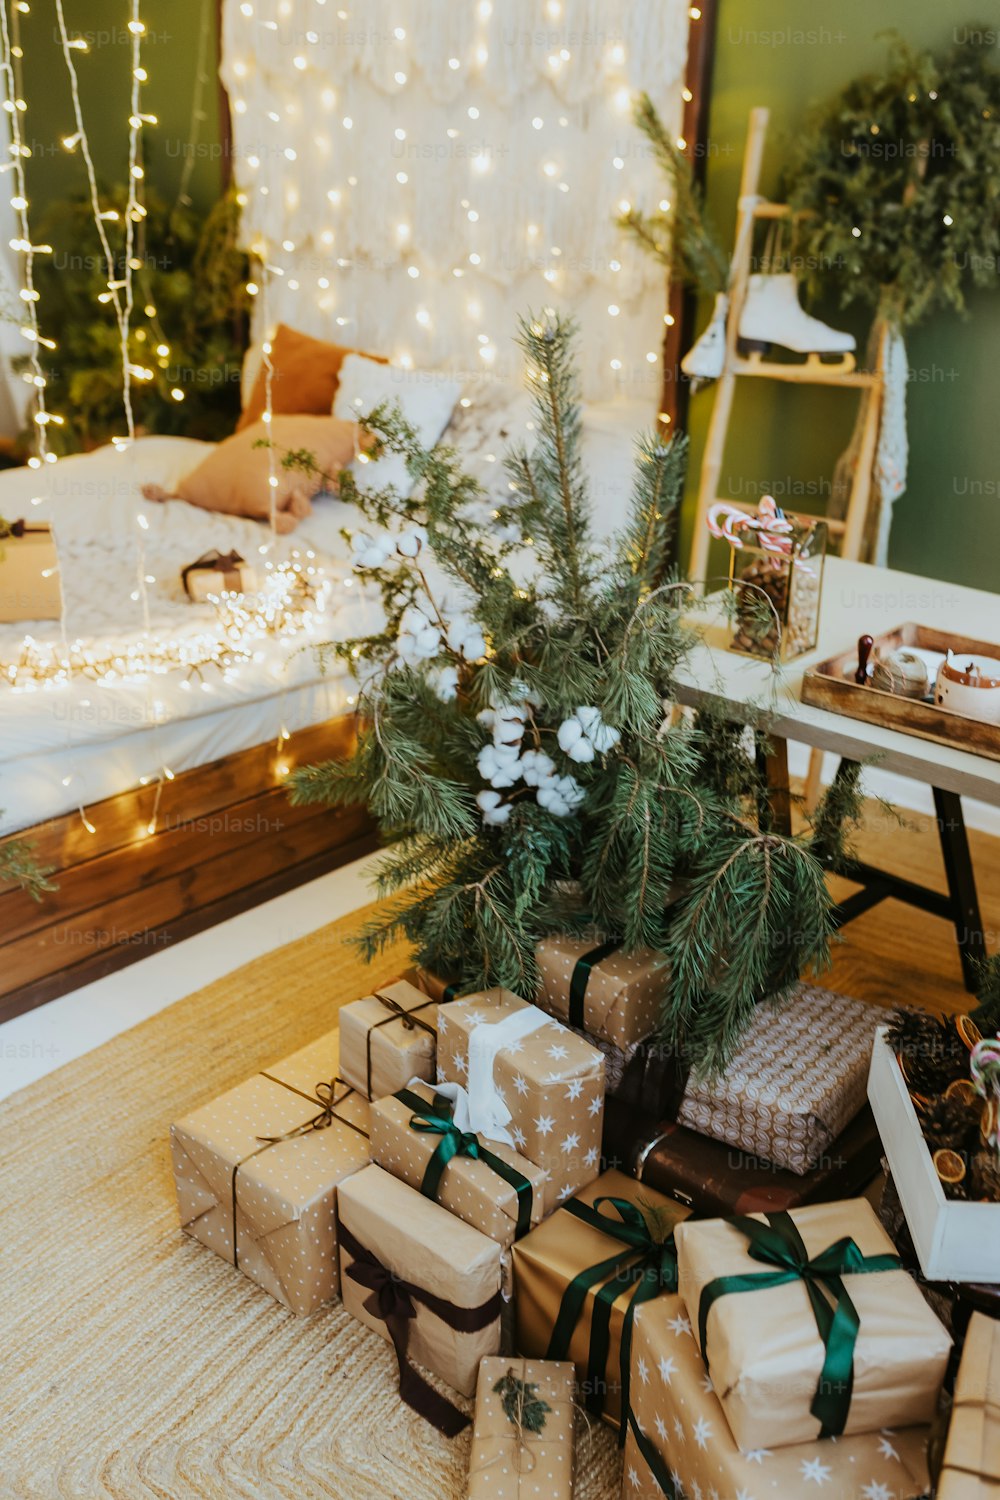 Una stanza piena di regali sotto l'albero di Natale